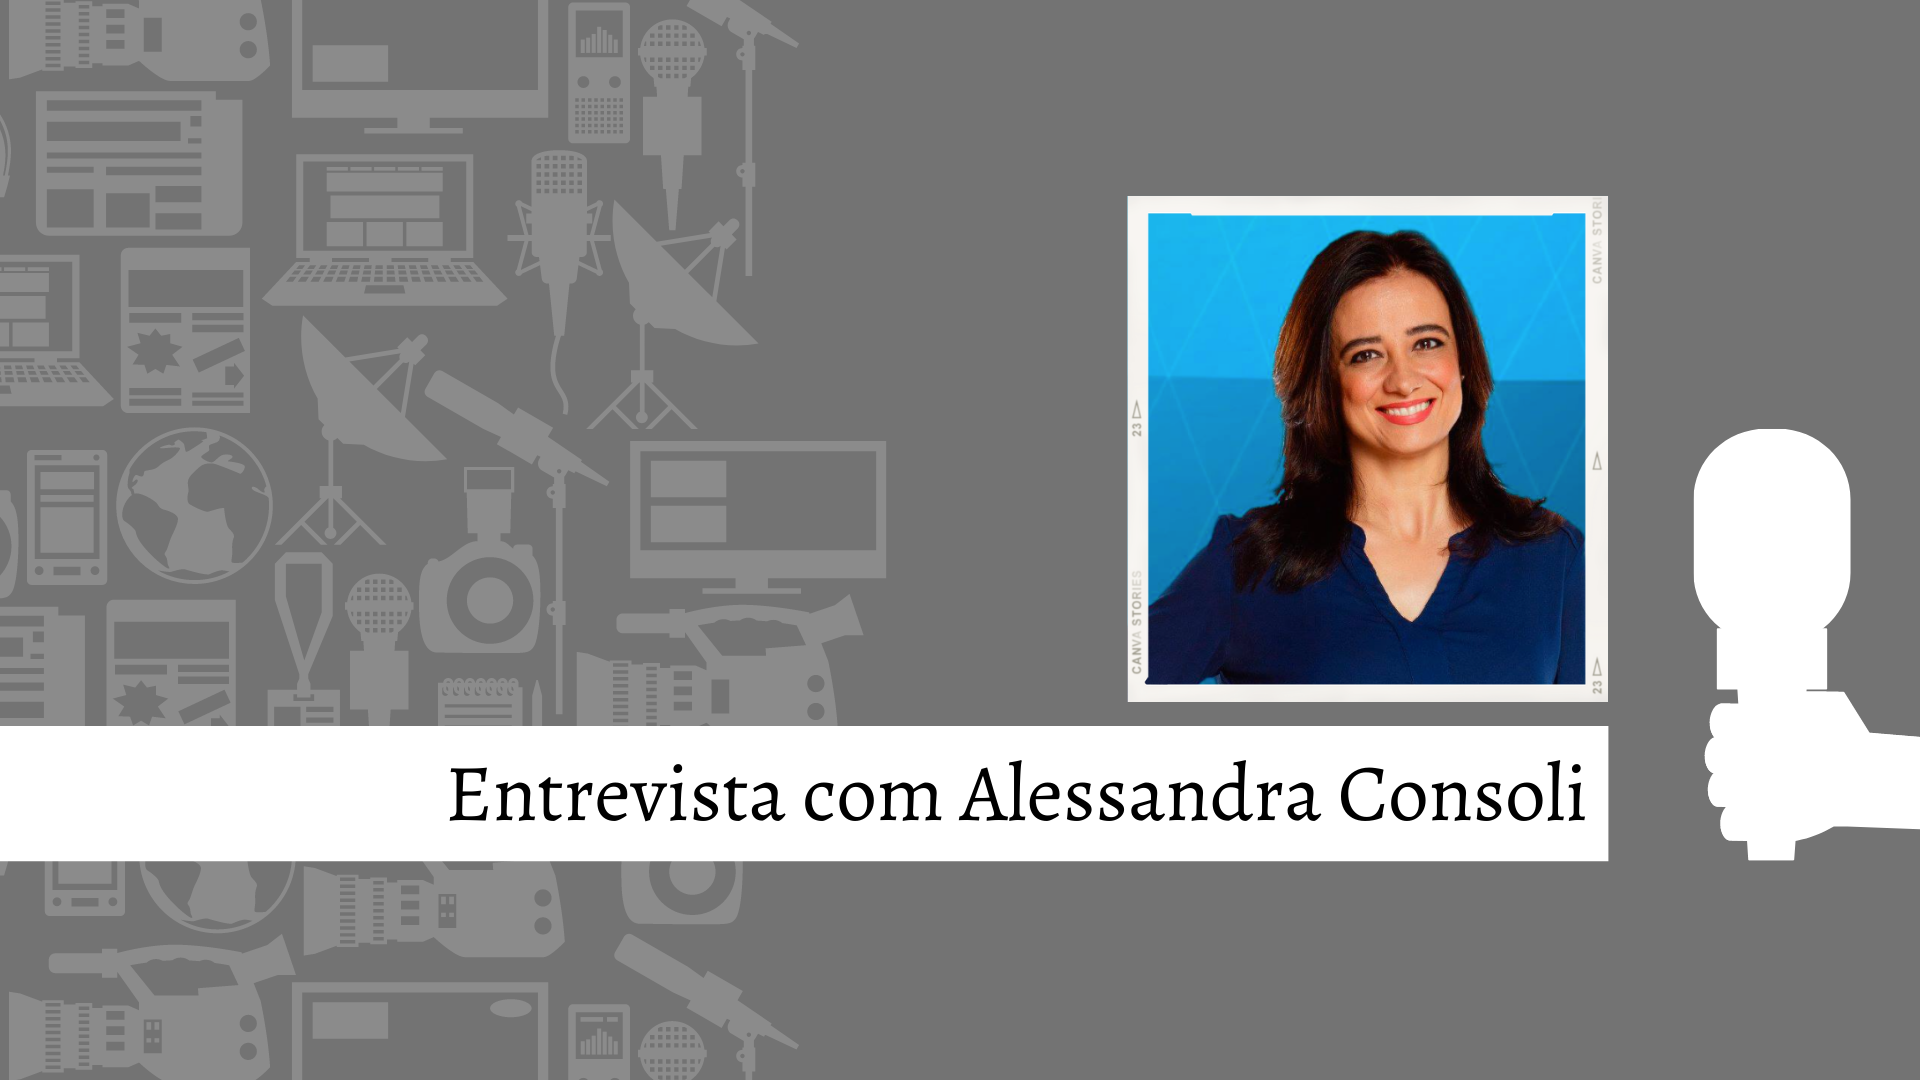 Especial: Entrevista com profissionais da comunicação – Alessandra Consoli